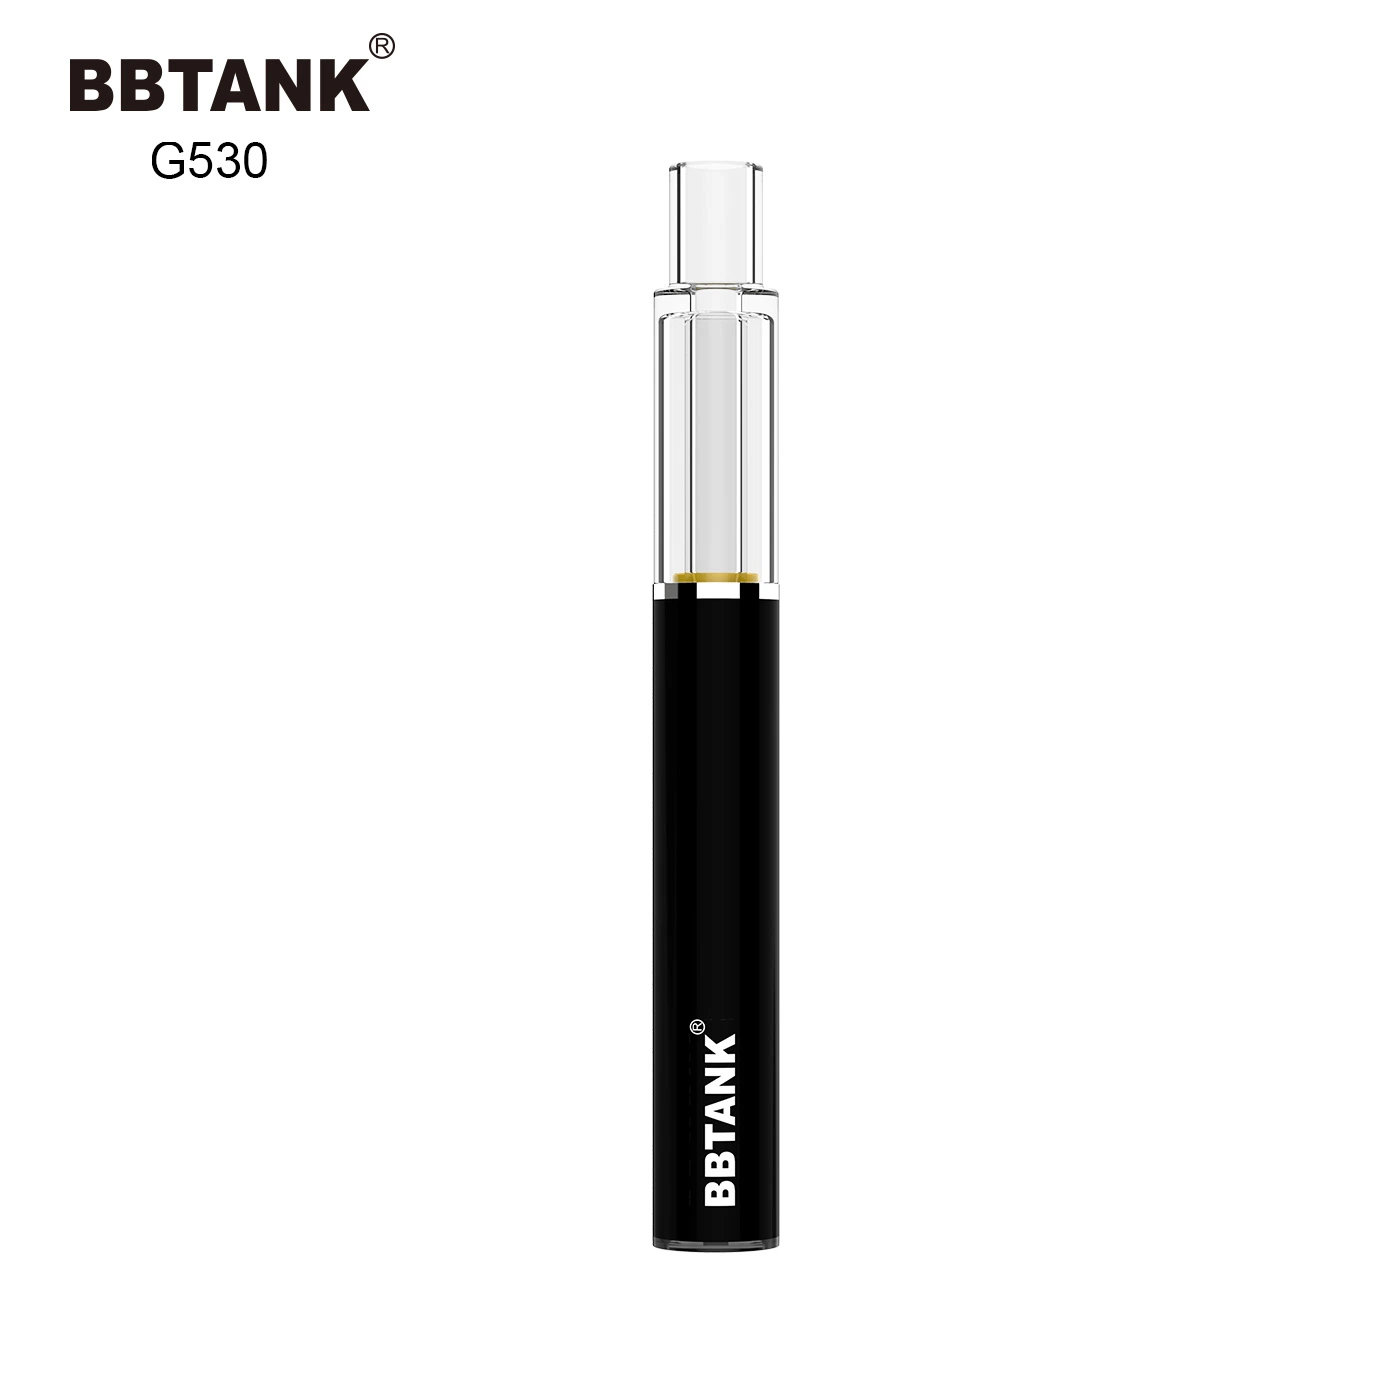 Bbtank All-Glass Disposable/Chargeable Vape Pen Designed for Pure Taste Live Resin Vape Hhc Vape Pen Wholesale/Supplier Price